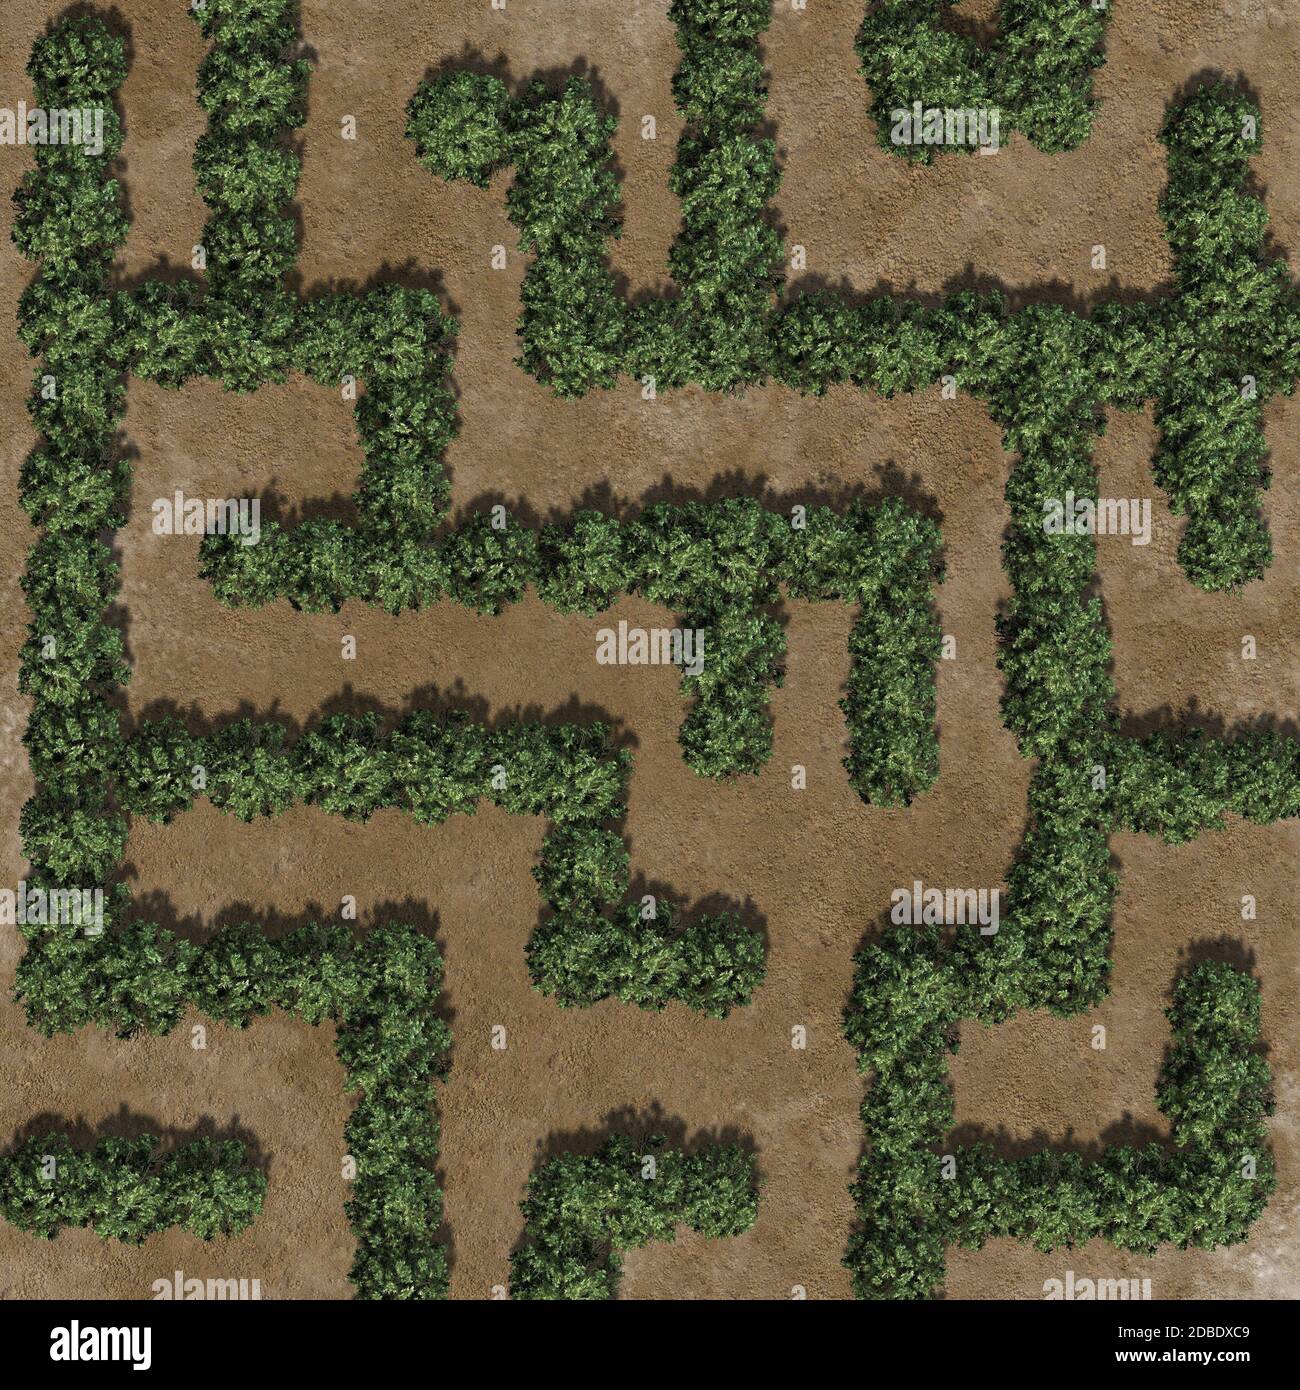 Buchsbaumlabyrinth auf einer Sandfläche Stockfoto